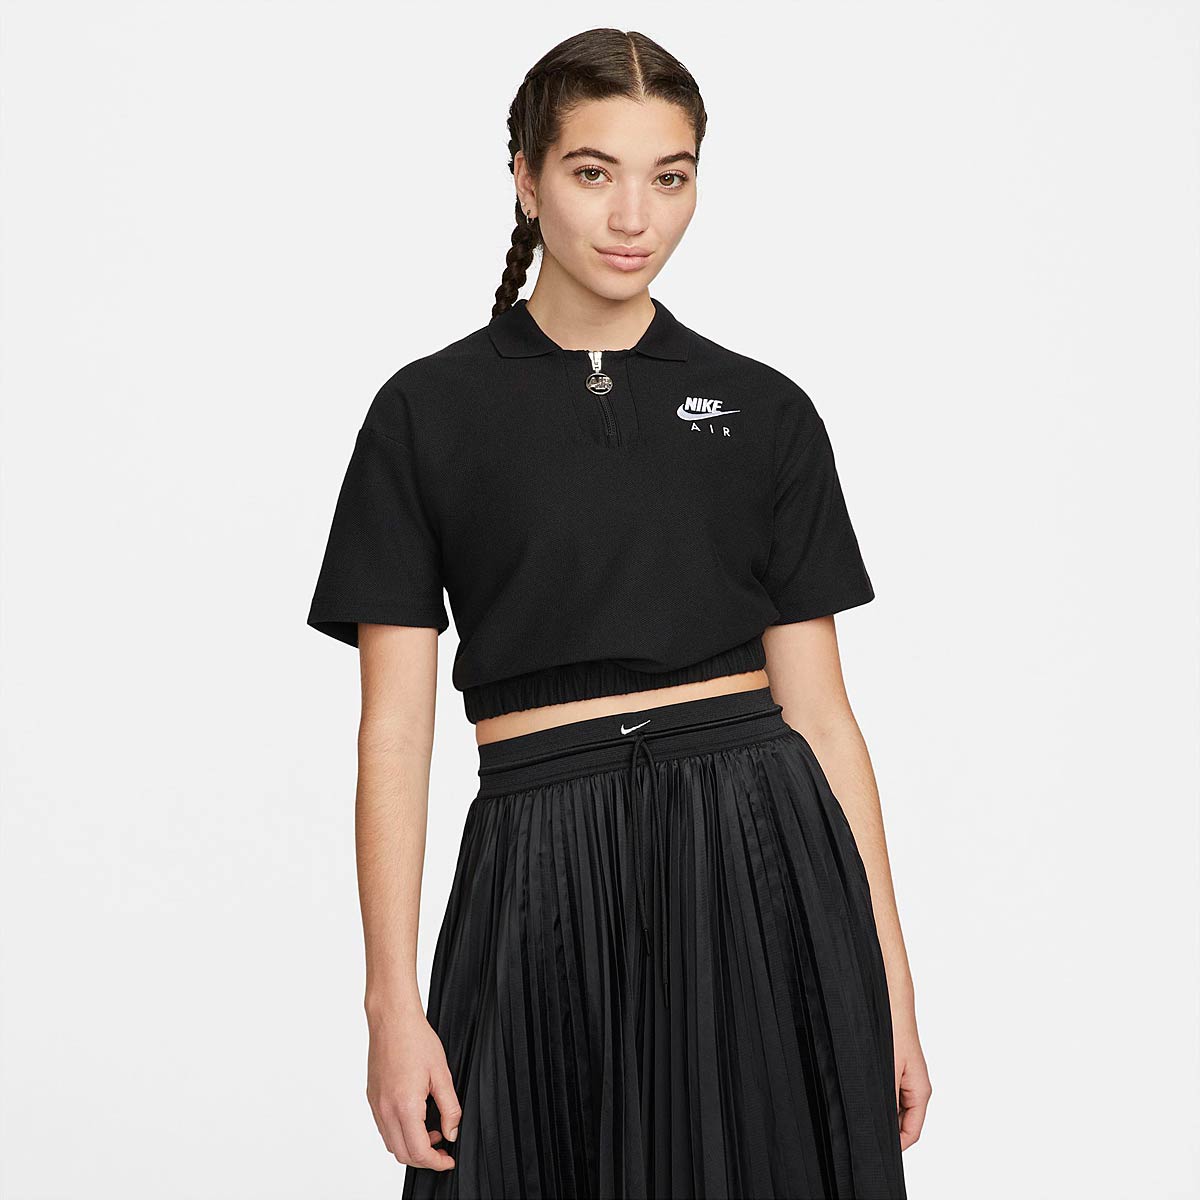 Nike Nsw Air Pique Polo T-Shirt Womens, Black/White